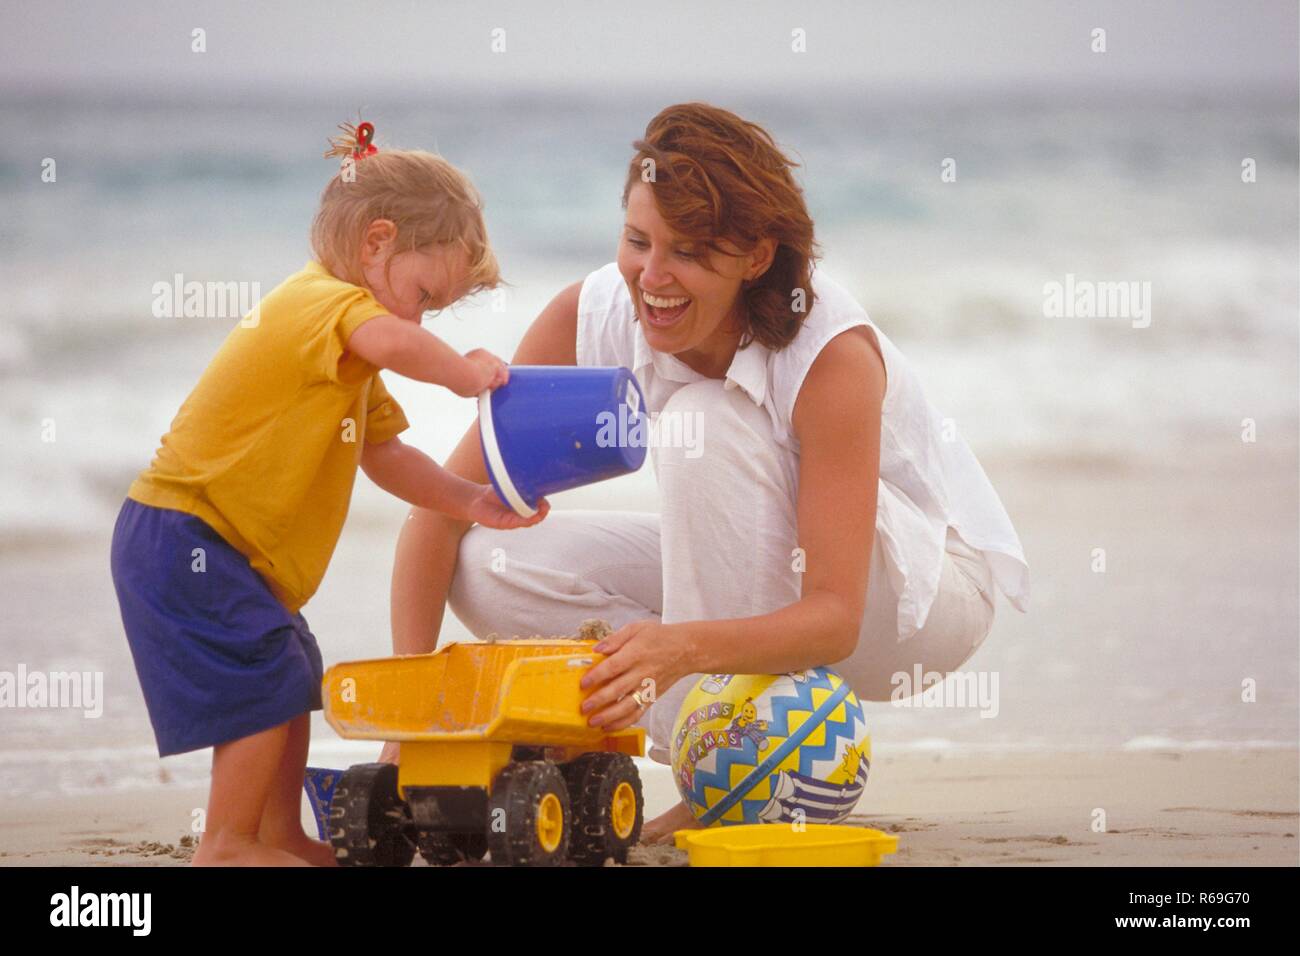 Ganzfigur, Outdoor, weiss gekleidete Frau spielt mit ihrer 2-jaehrigen blonden Tochter mit einem blauen Eimer und gelbem Spielzeuglaster am Strand Stock Photo